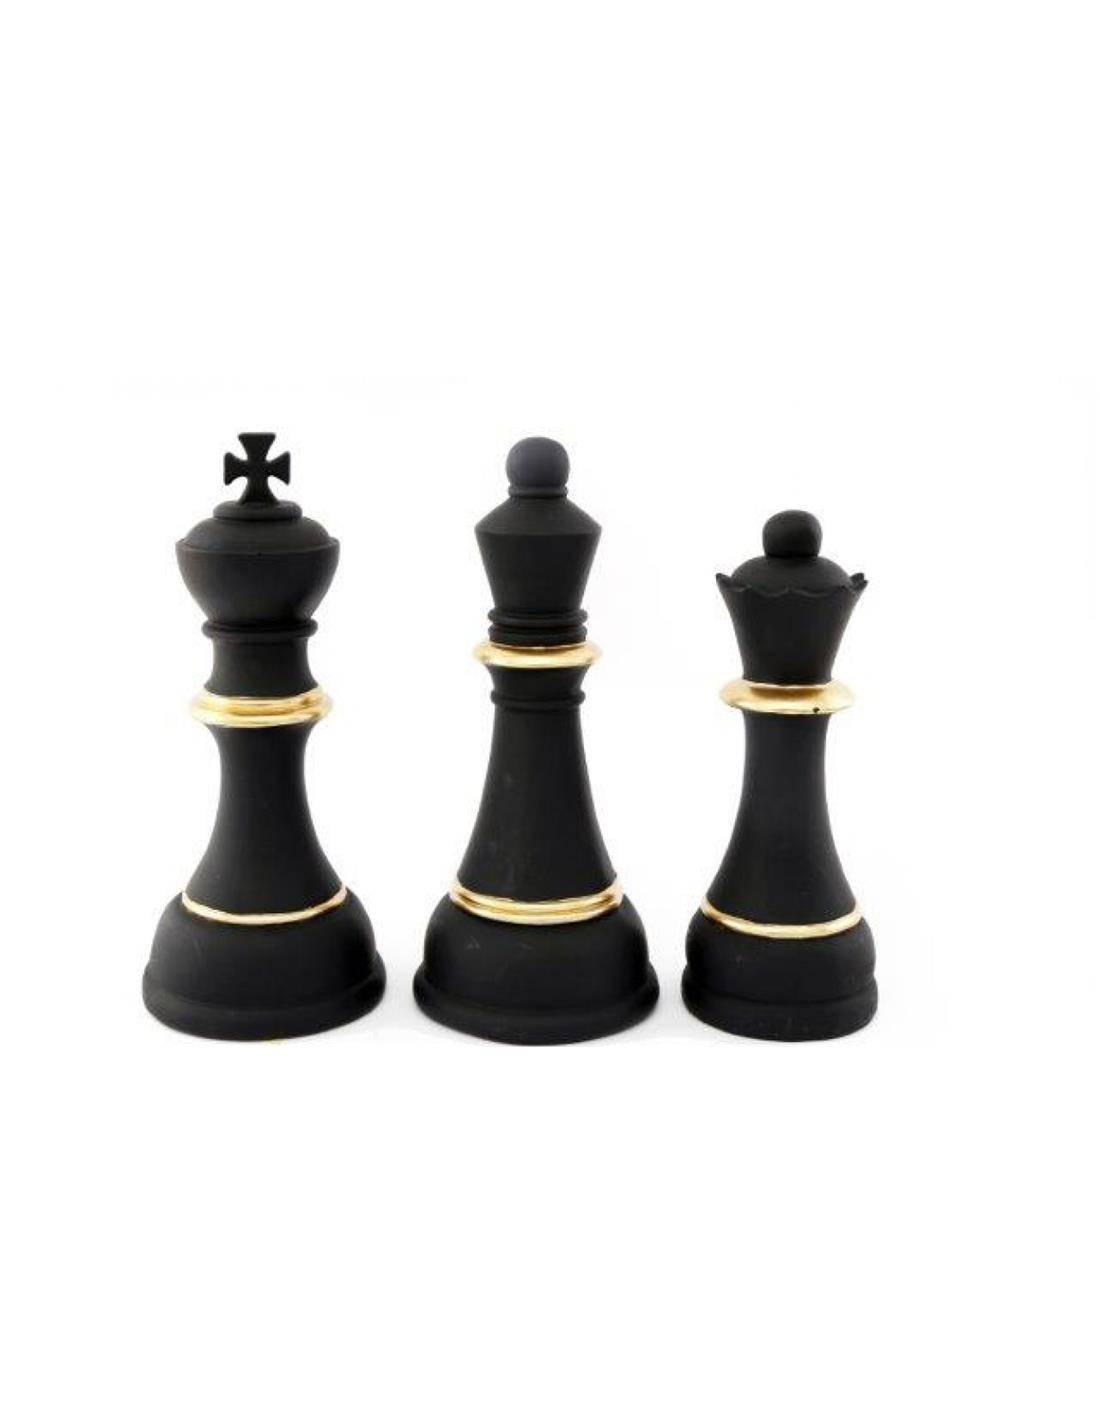 Πιόνια σκάκι μαύρα 28εκ. 2σχ.